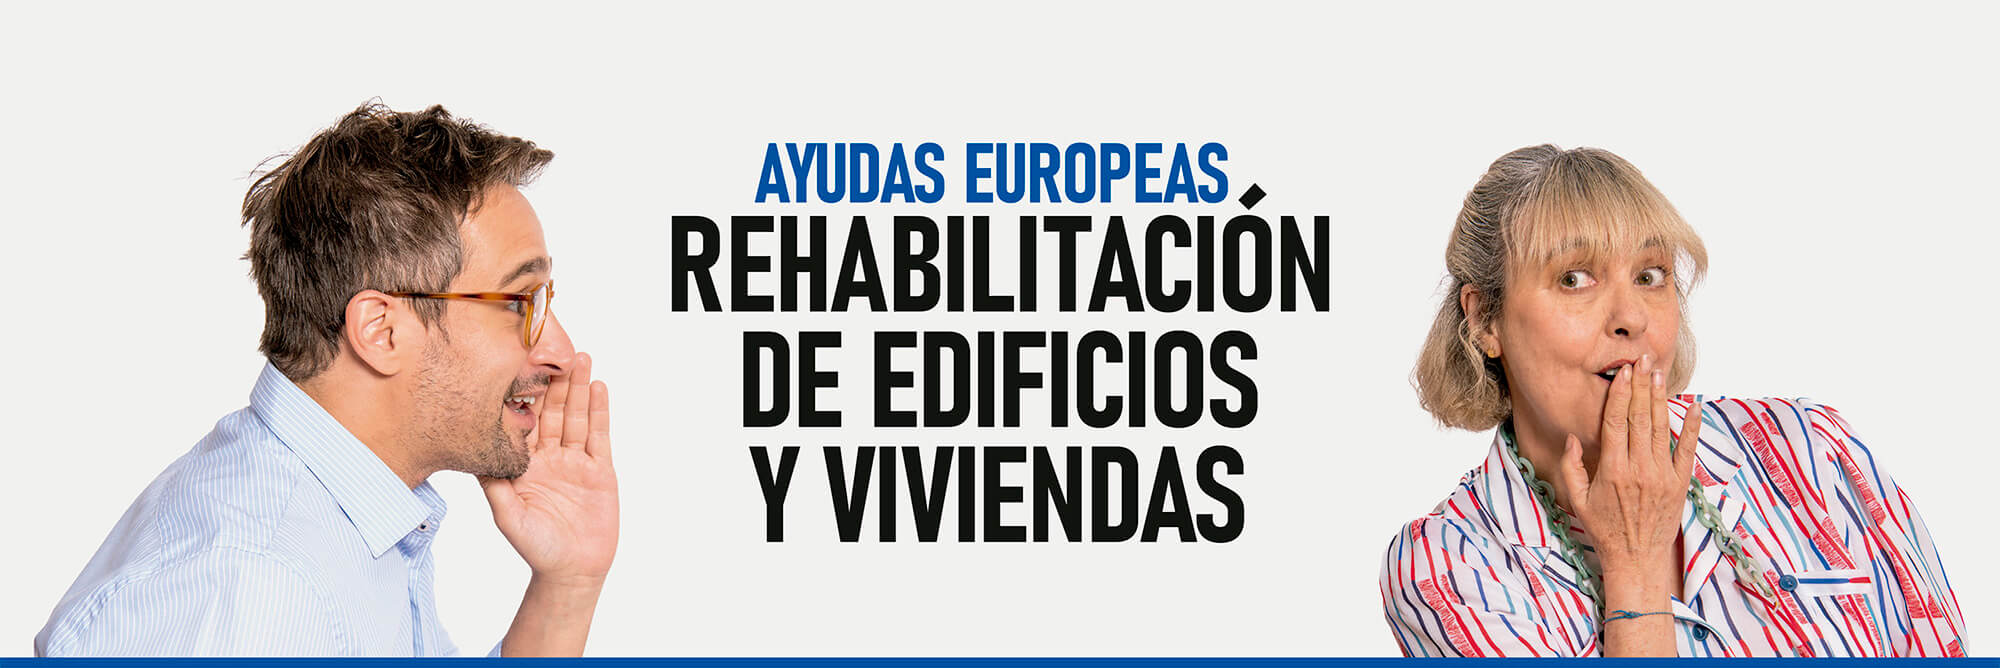 Ayudas europeas, rehabilitación de edificios y viviendas